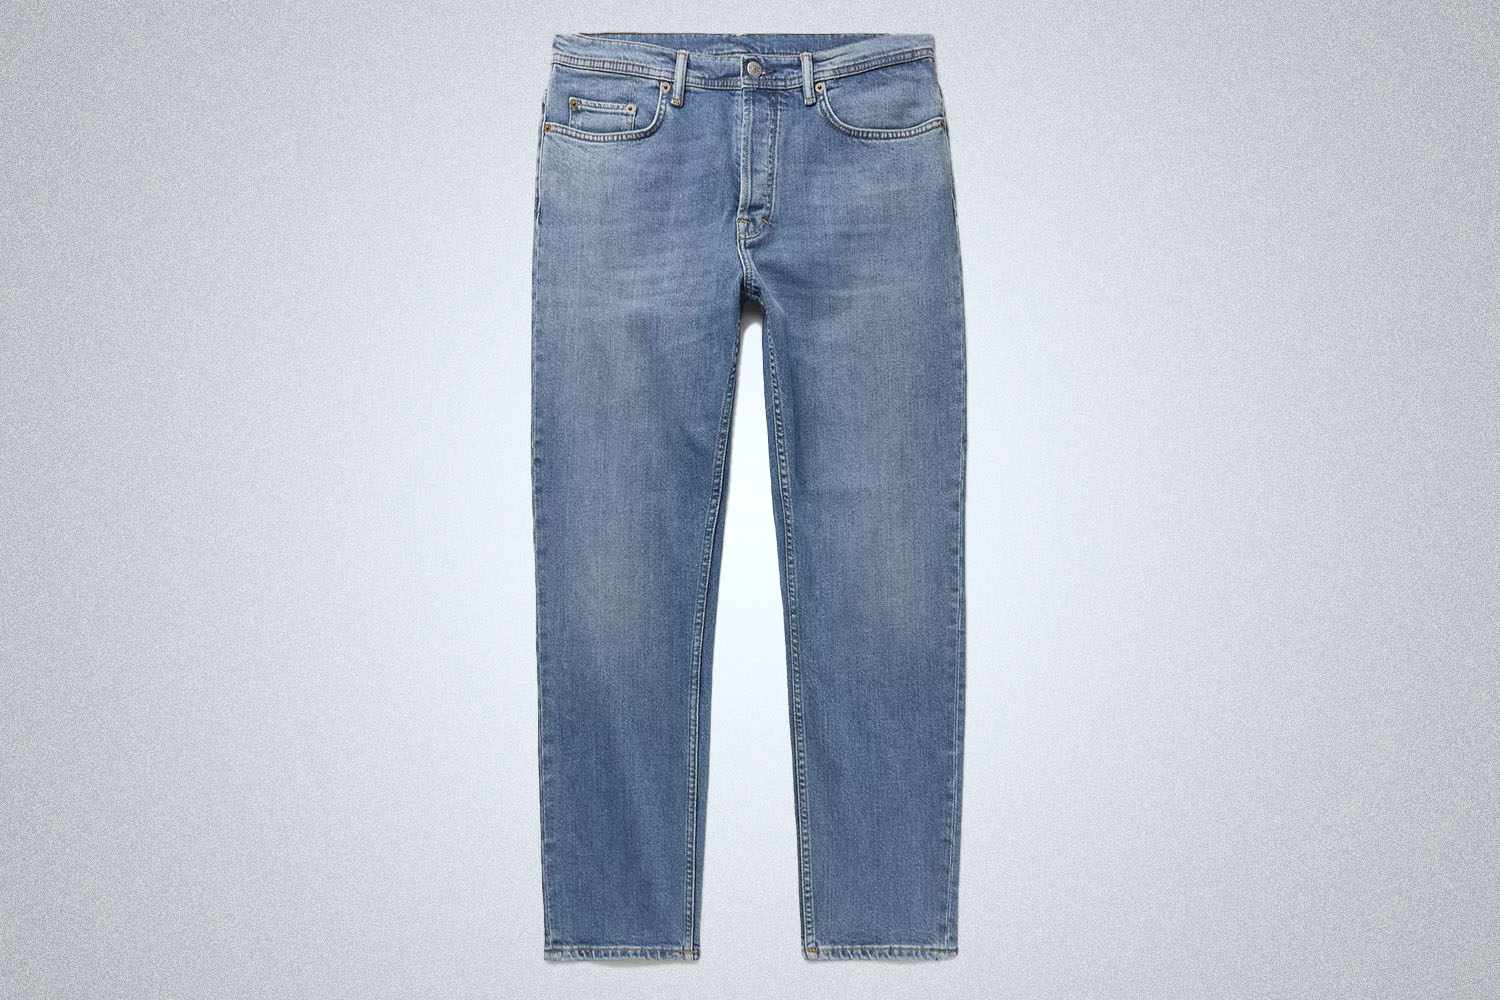 American Denim Jeans – ORIGIN